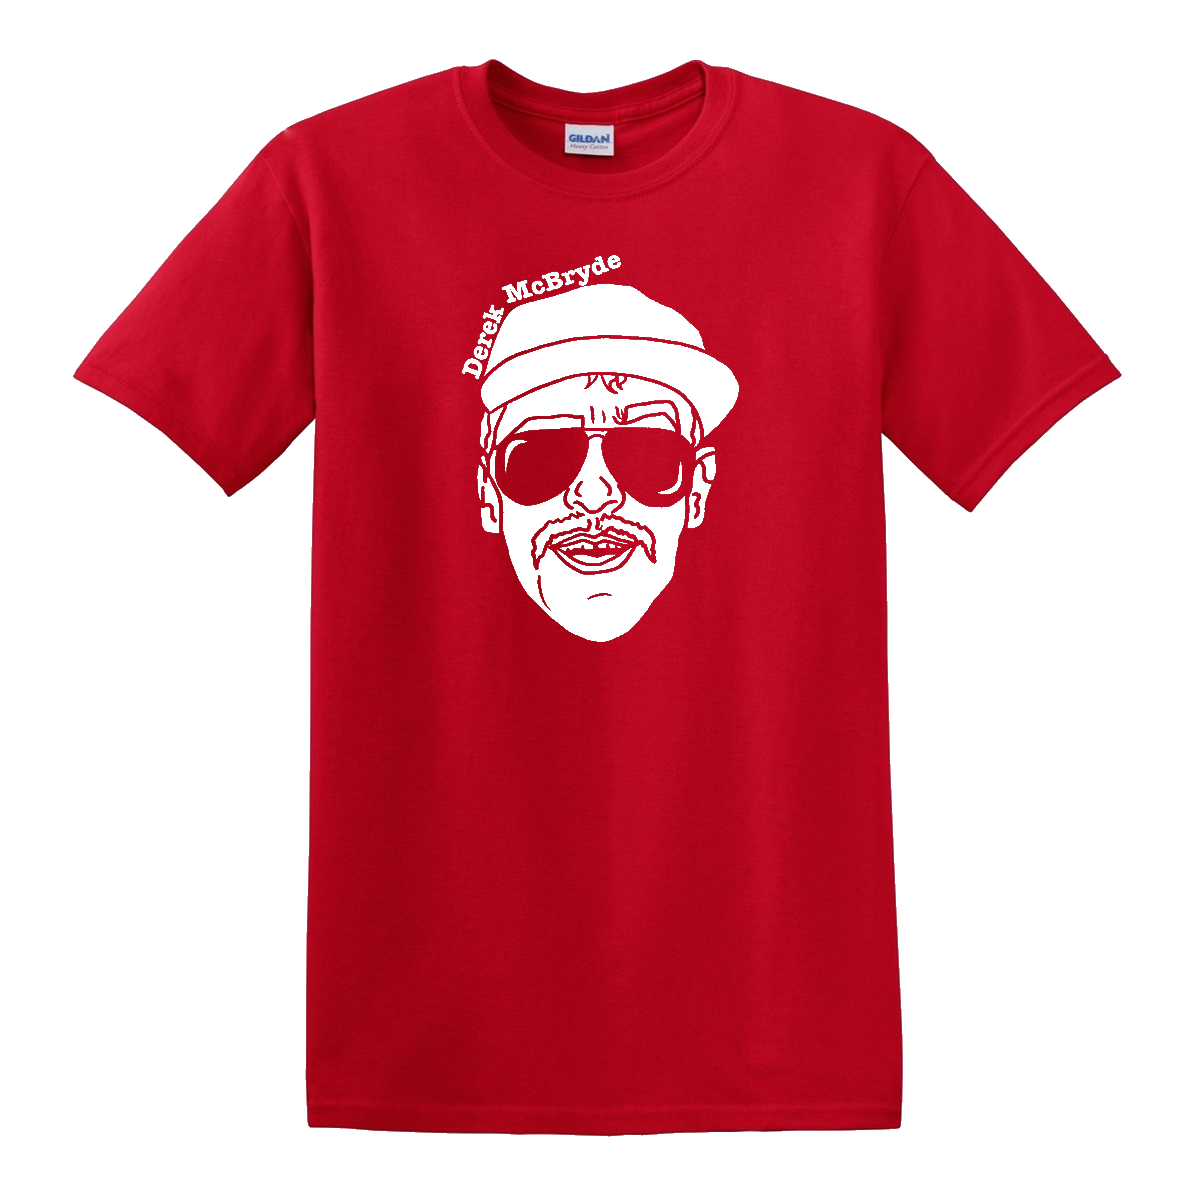 T-Shirt - Derek McBryde "Face" - Red